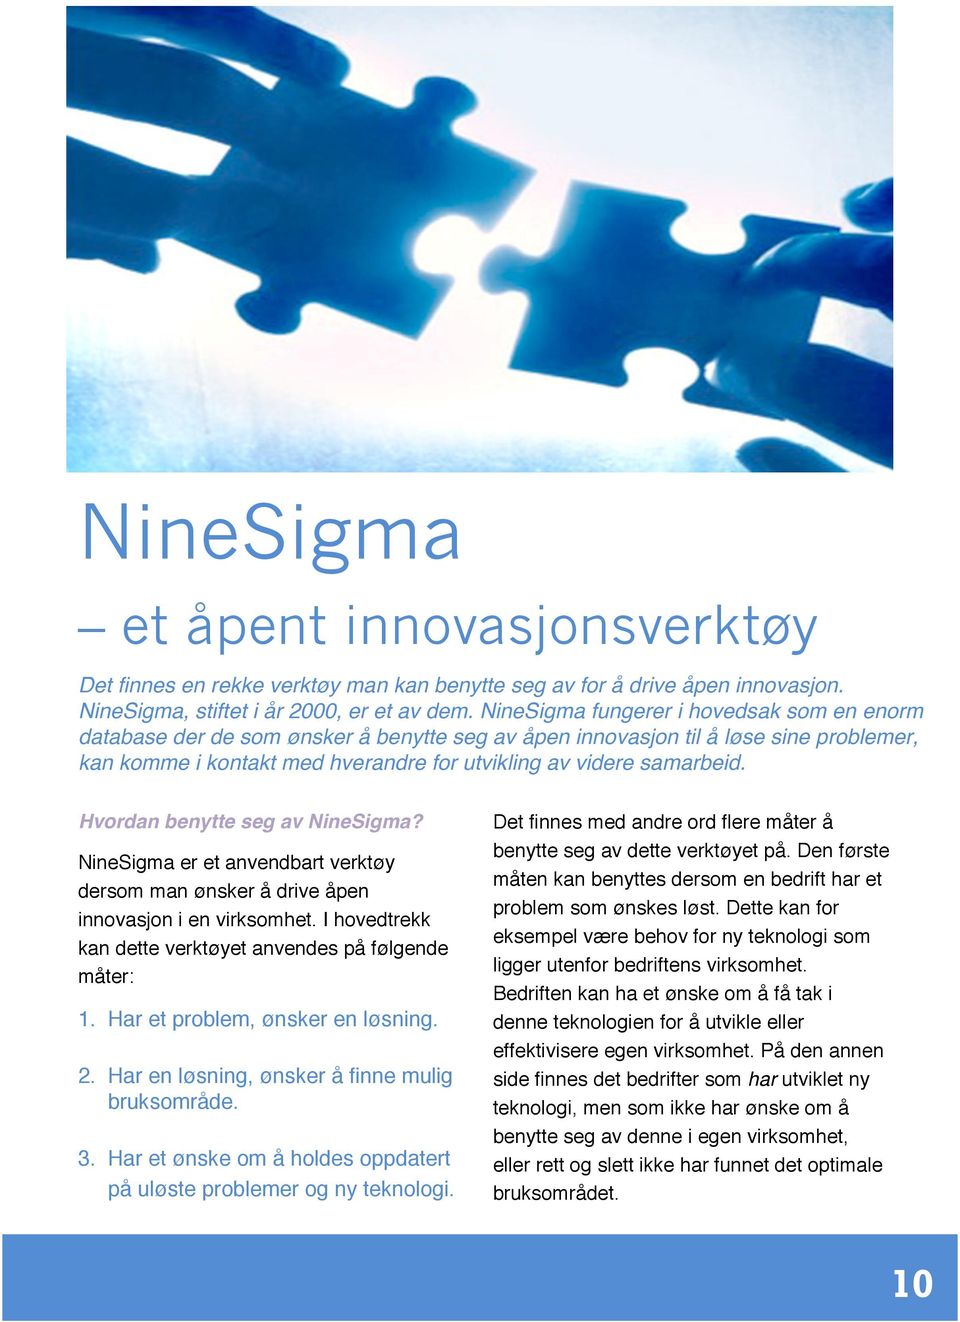 Hvordan benytte seg av NineSigma? NineSigma er et anvendbart verktøy dersom man ønsker å drive åpen innovasjon i en virksomhet. I hovedtrekk kan dette verktøyet anvendes på følgende måter: 1.